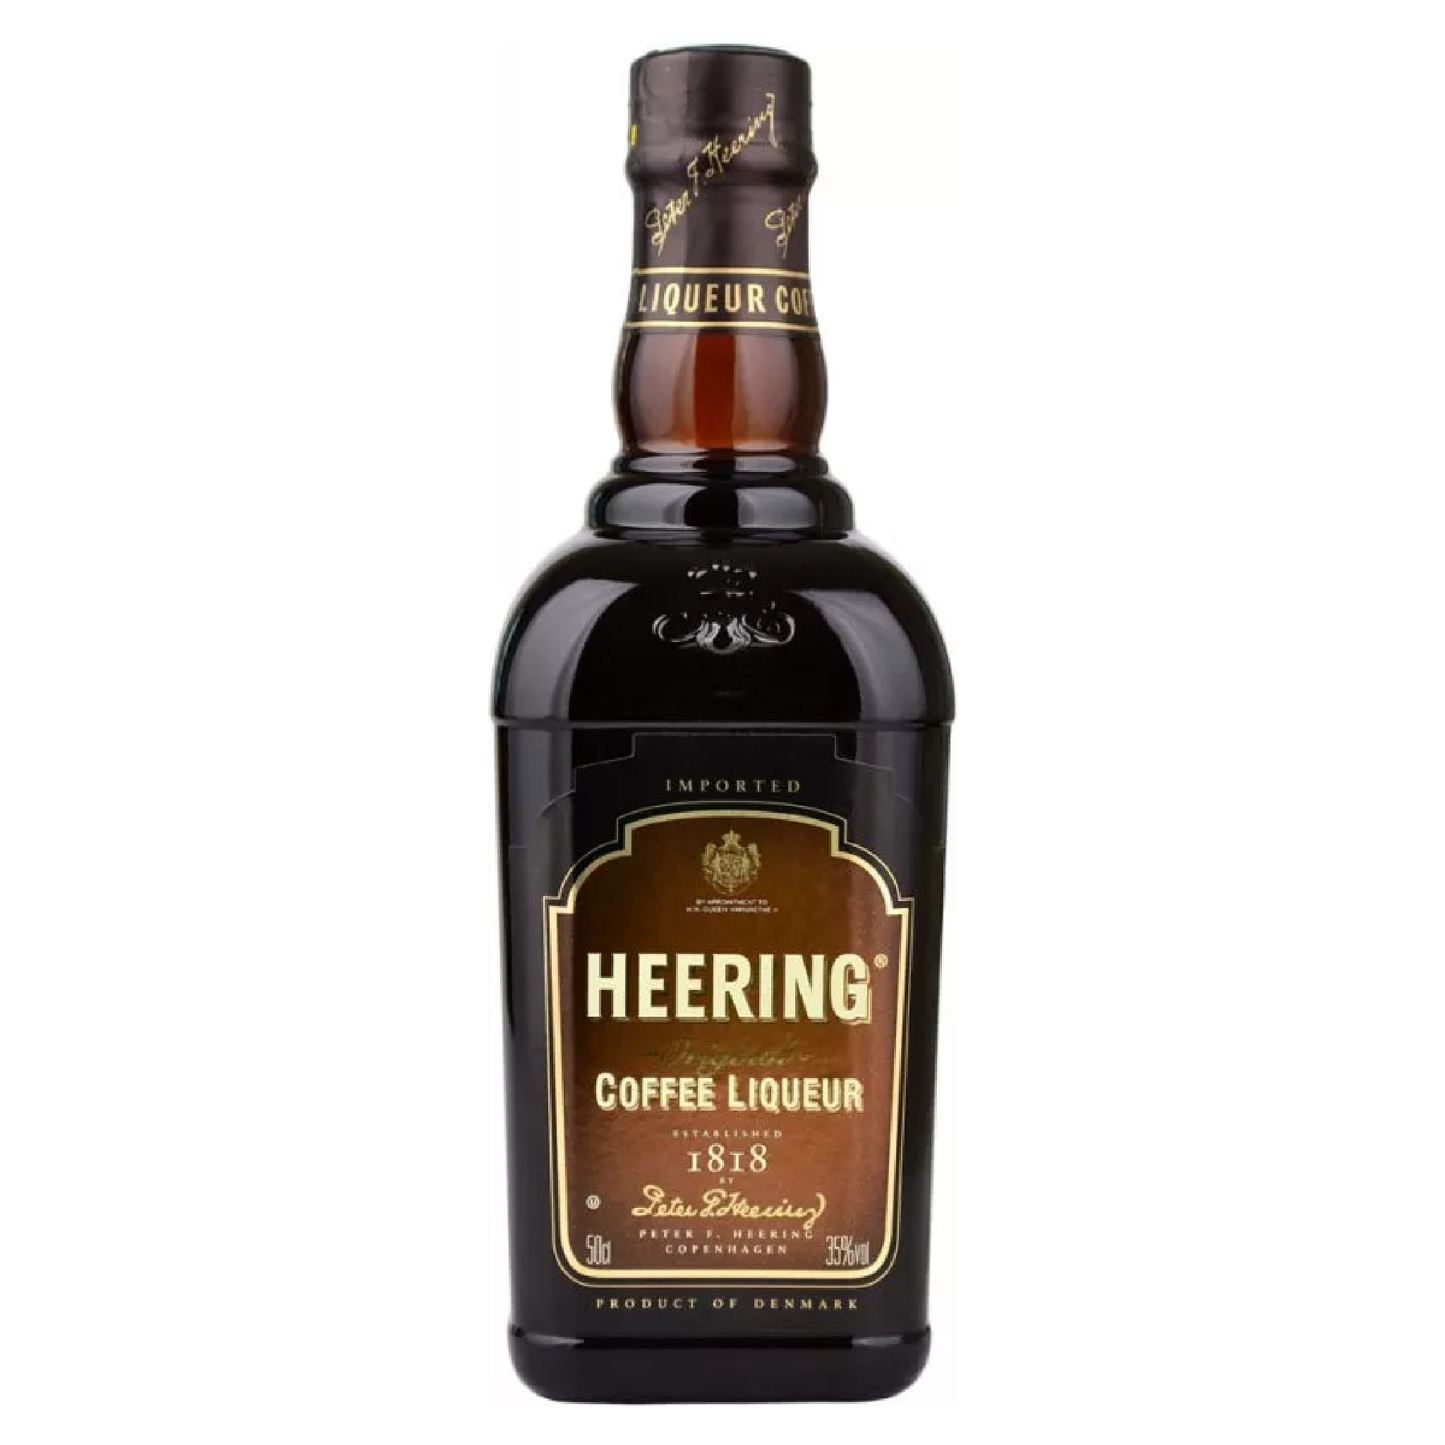 Heering Coffee Liqueur/Liquor - Liquor Geeks